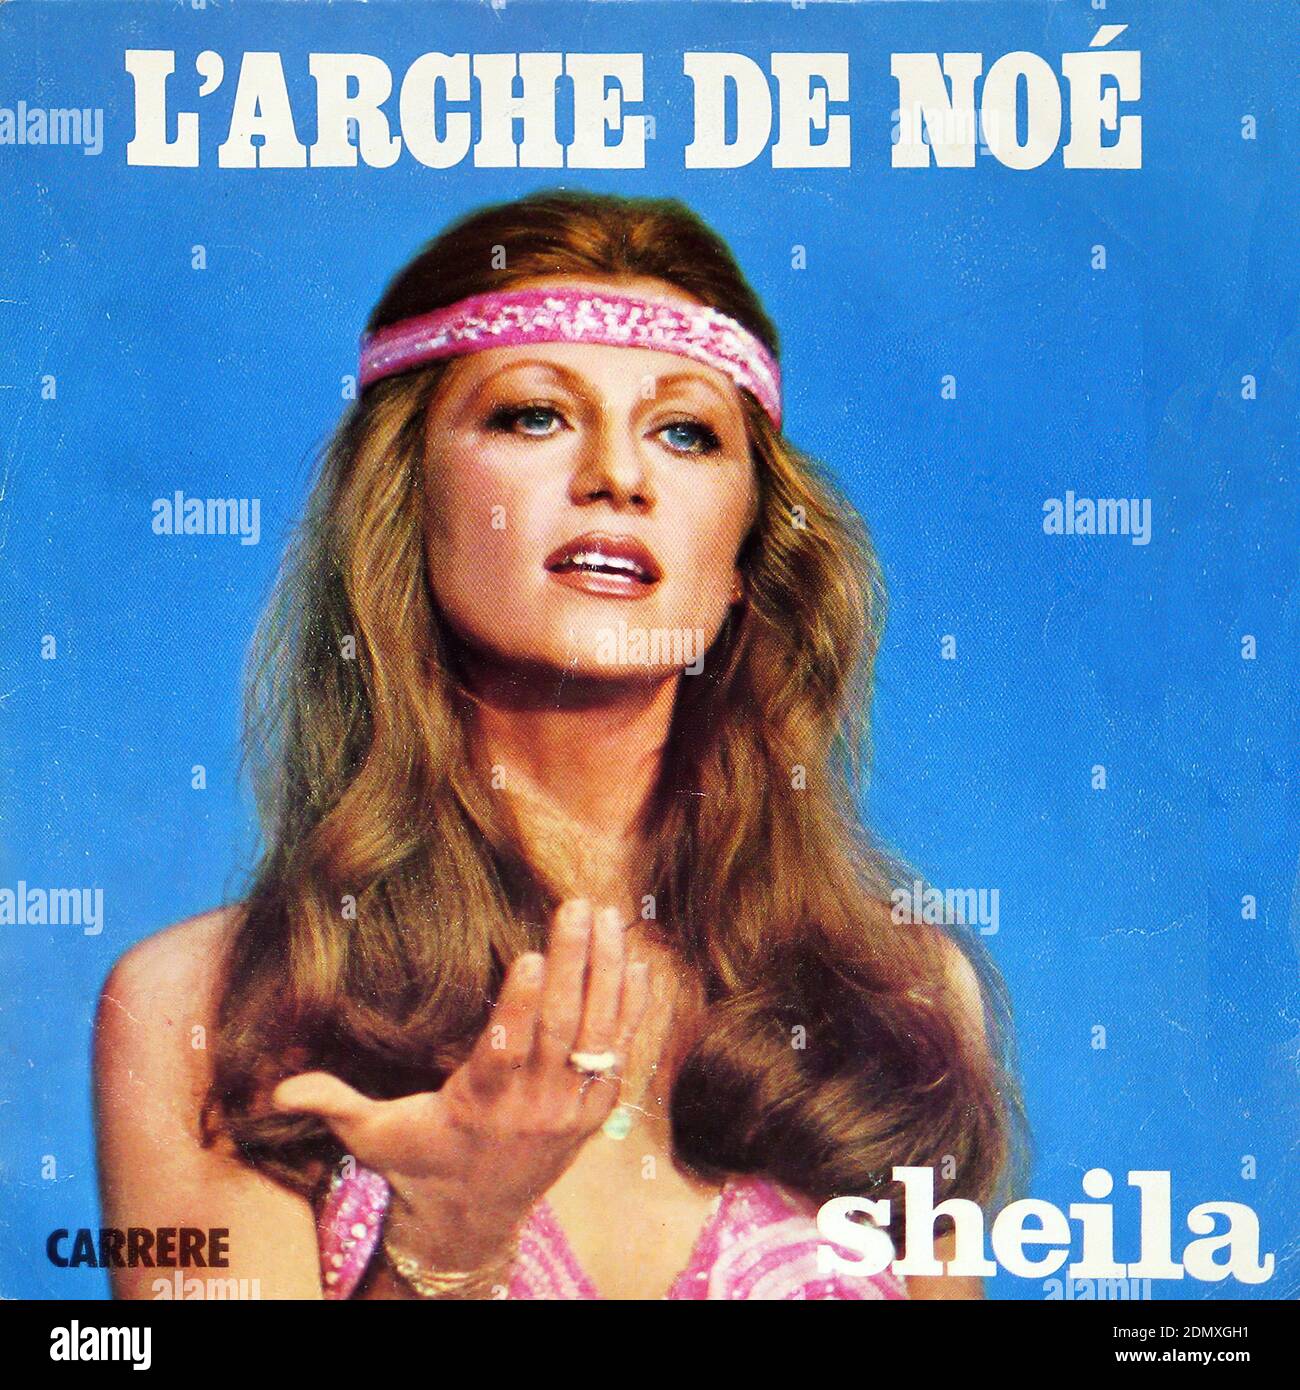 Sheila L'Arche de Noe Une Fille ne Vaut pas une Femme - Vintage Vinyl  Record Cover Stock Photo - Alamy